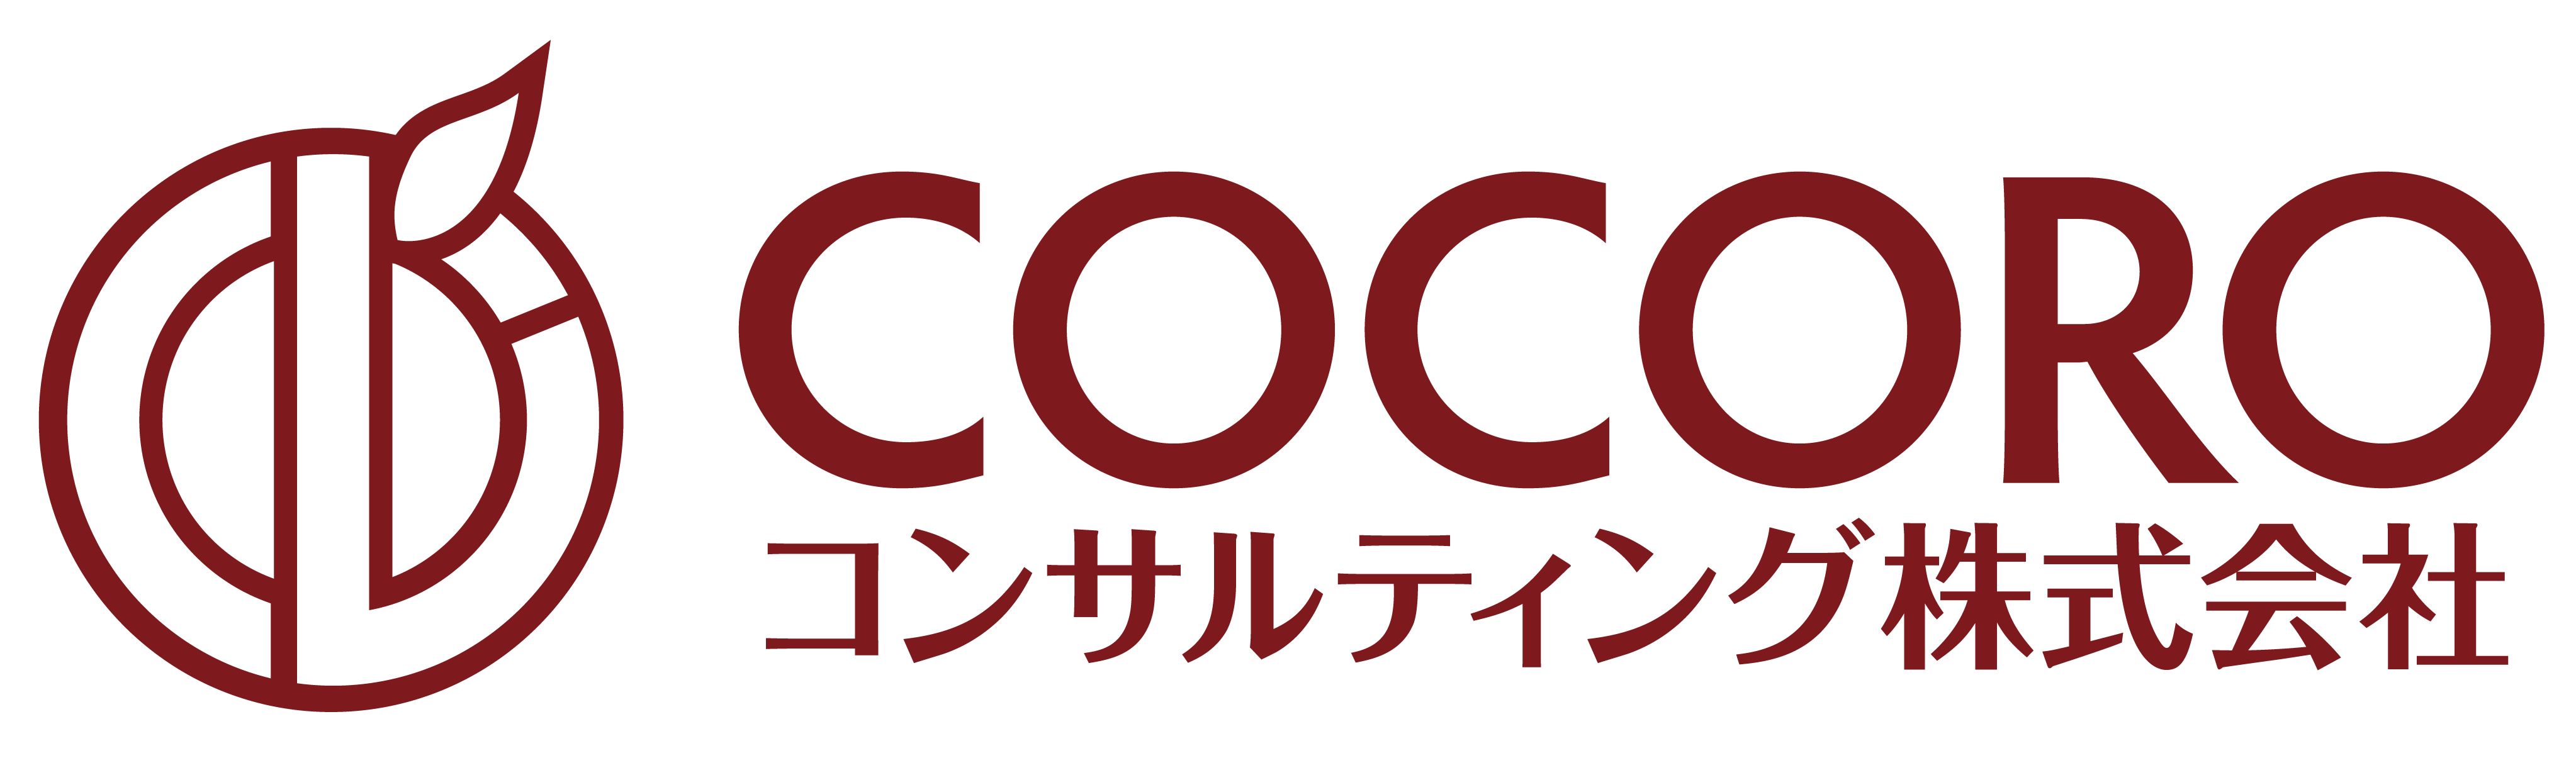 COCOROコンサルティング株式会社